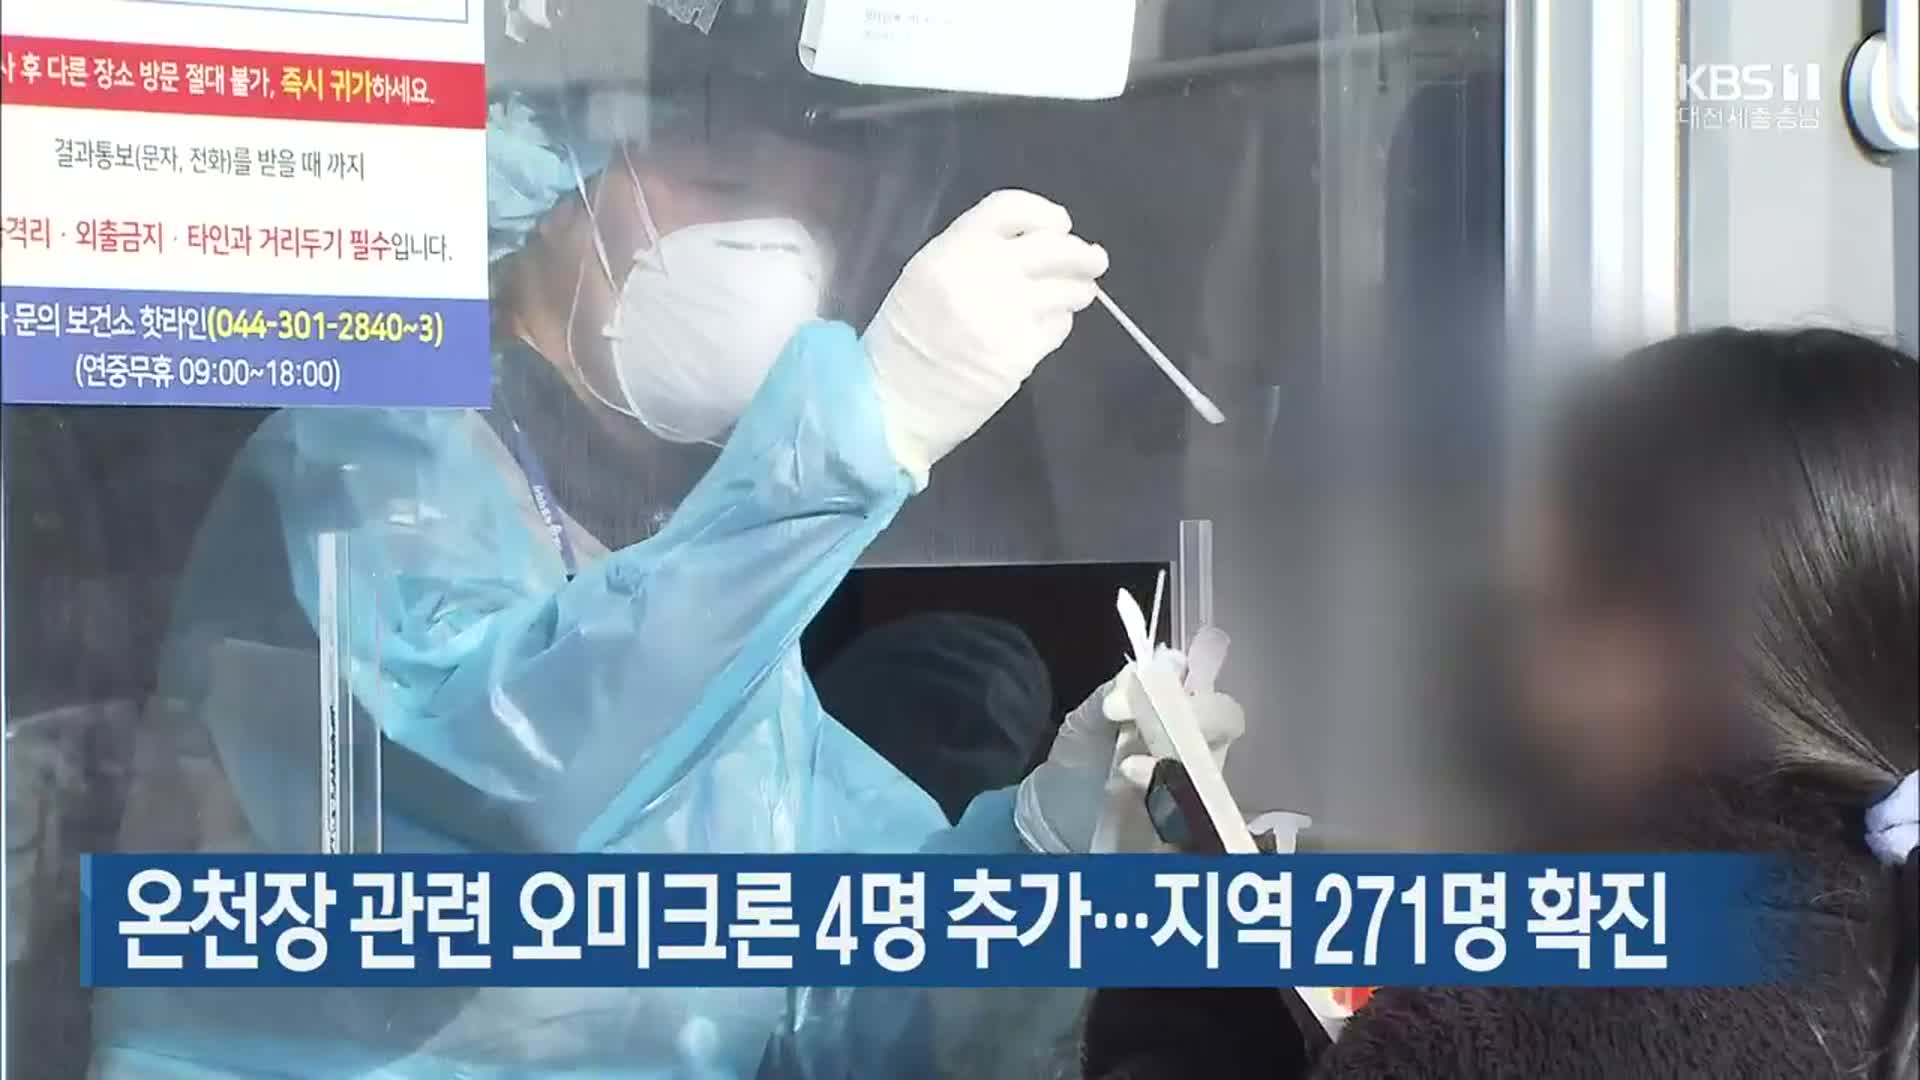 온천장 관련 오미크론 4명 추가…대전·세종·충남 271명 확진